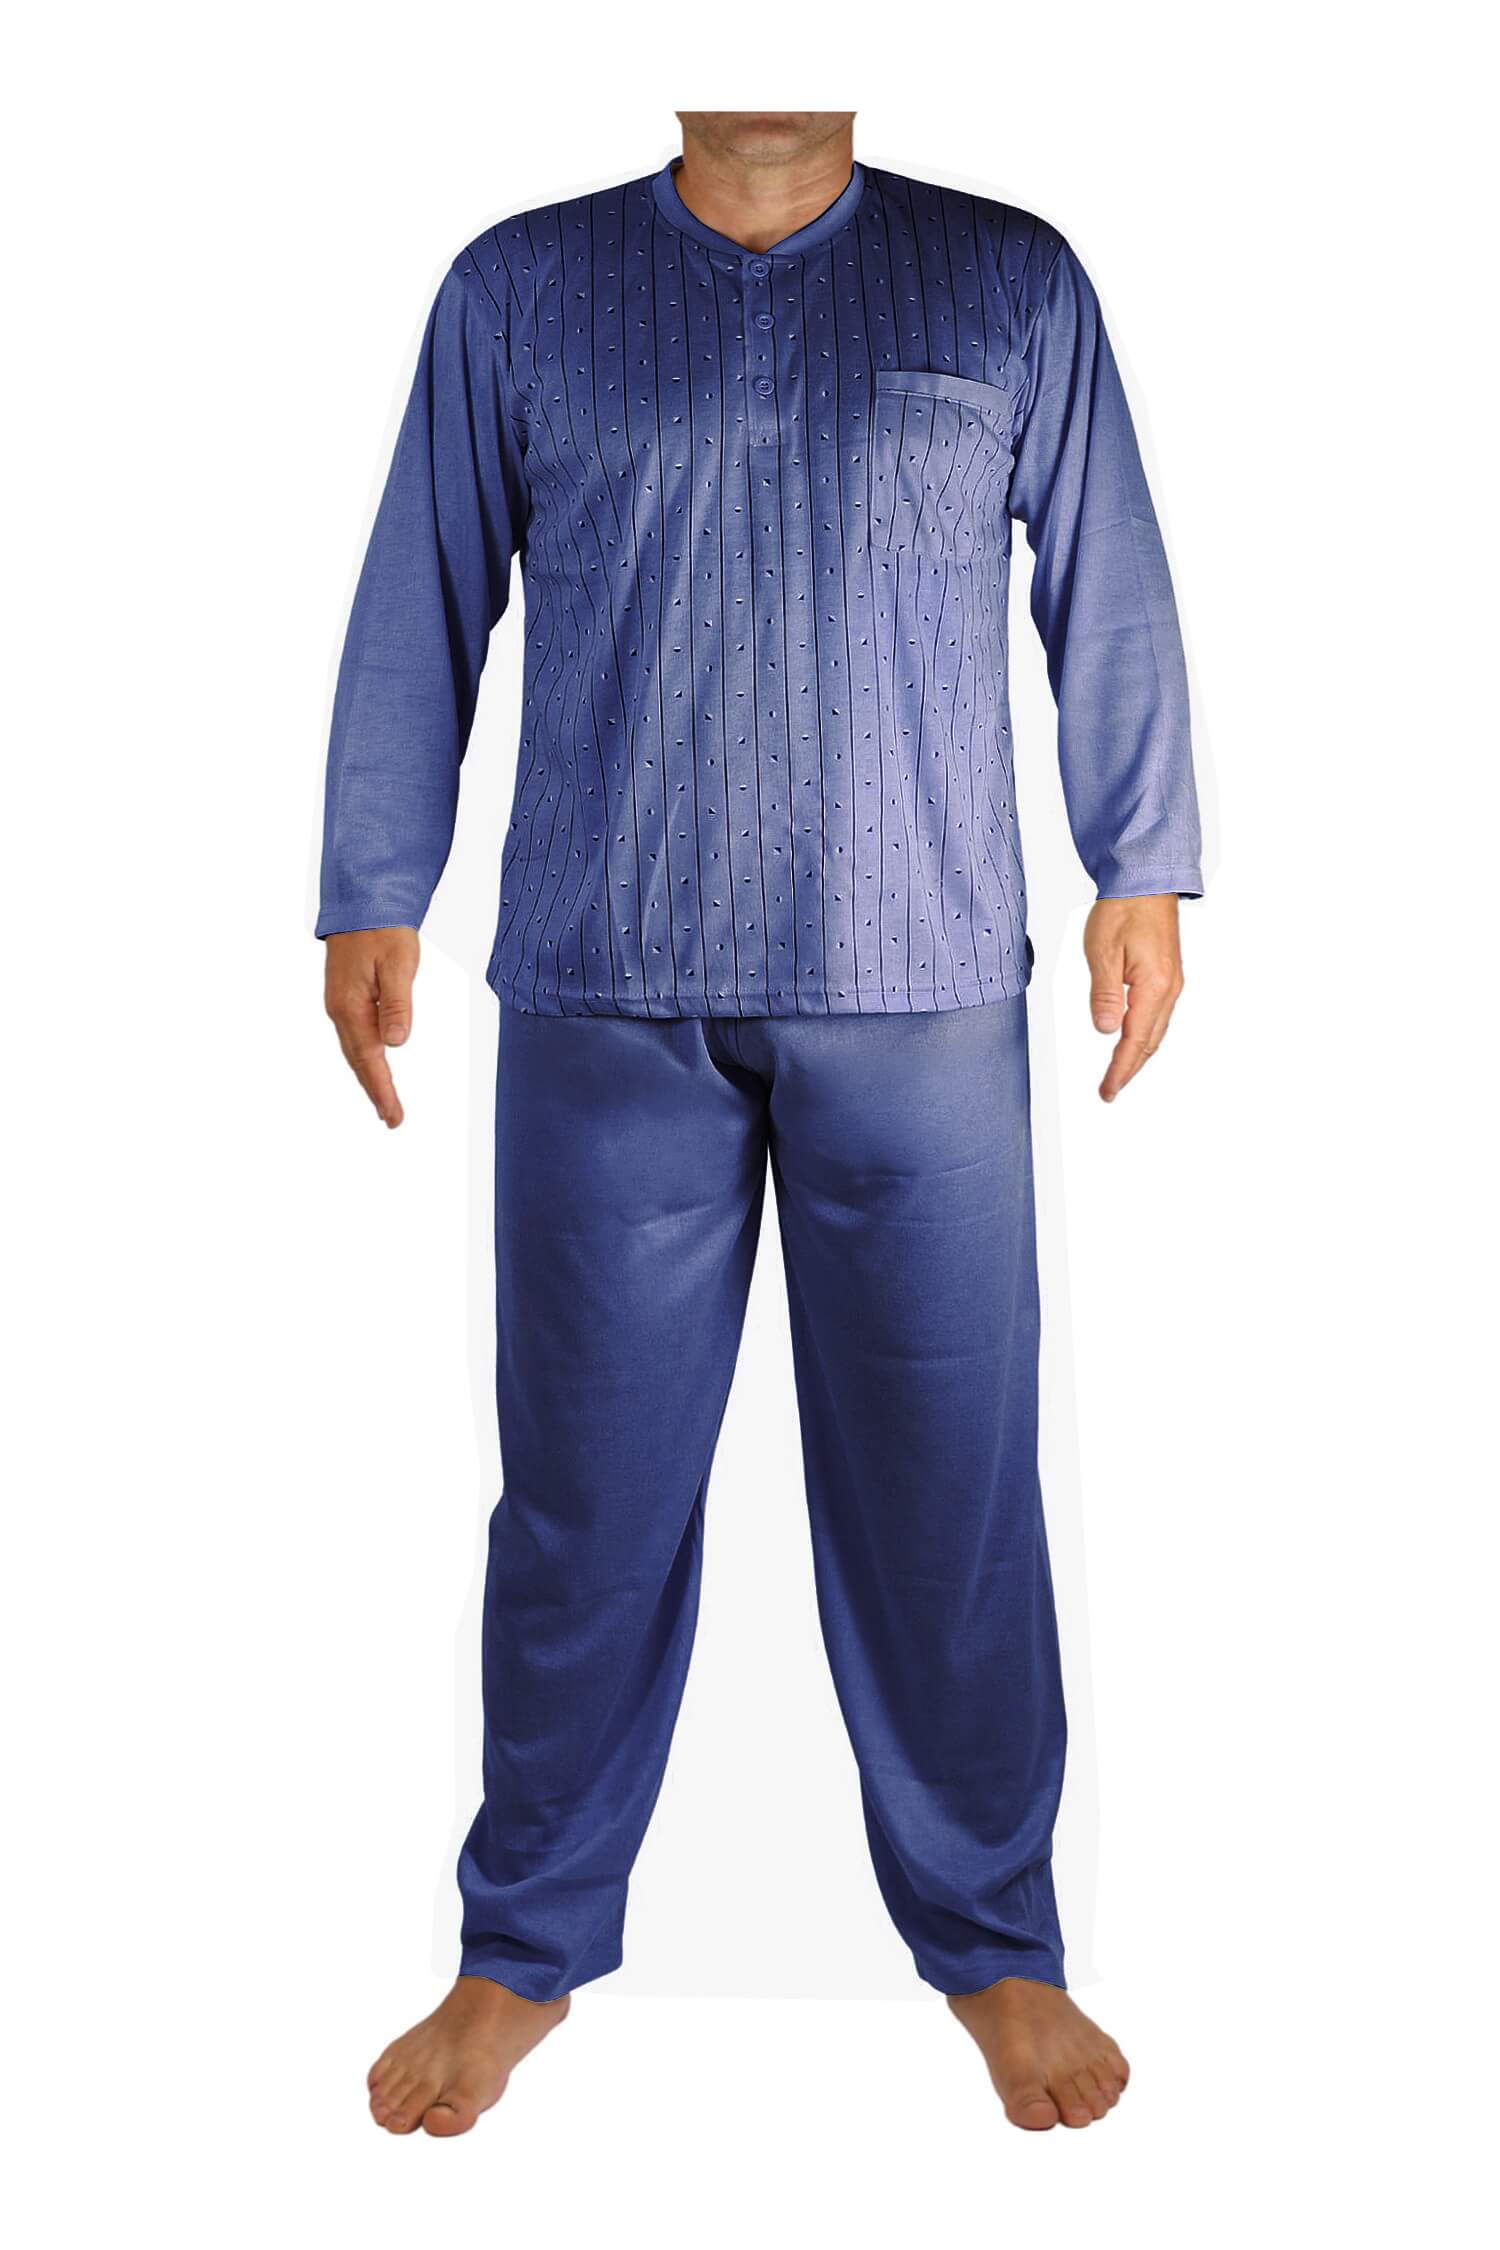 Ludvík pyžamo pánské dlouhé V1974 tmavě modrá 3XL